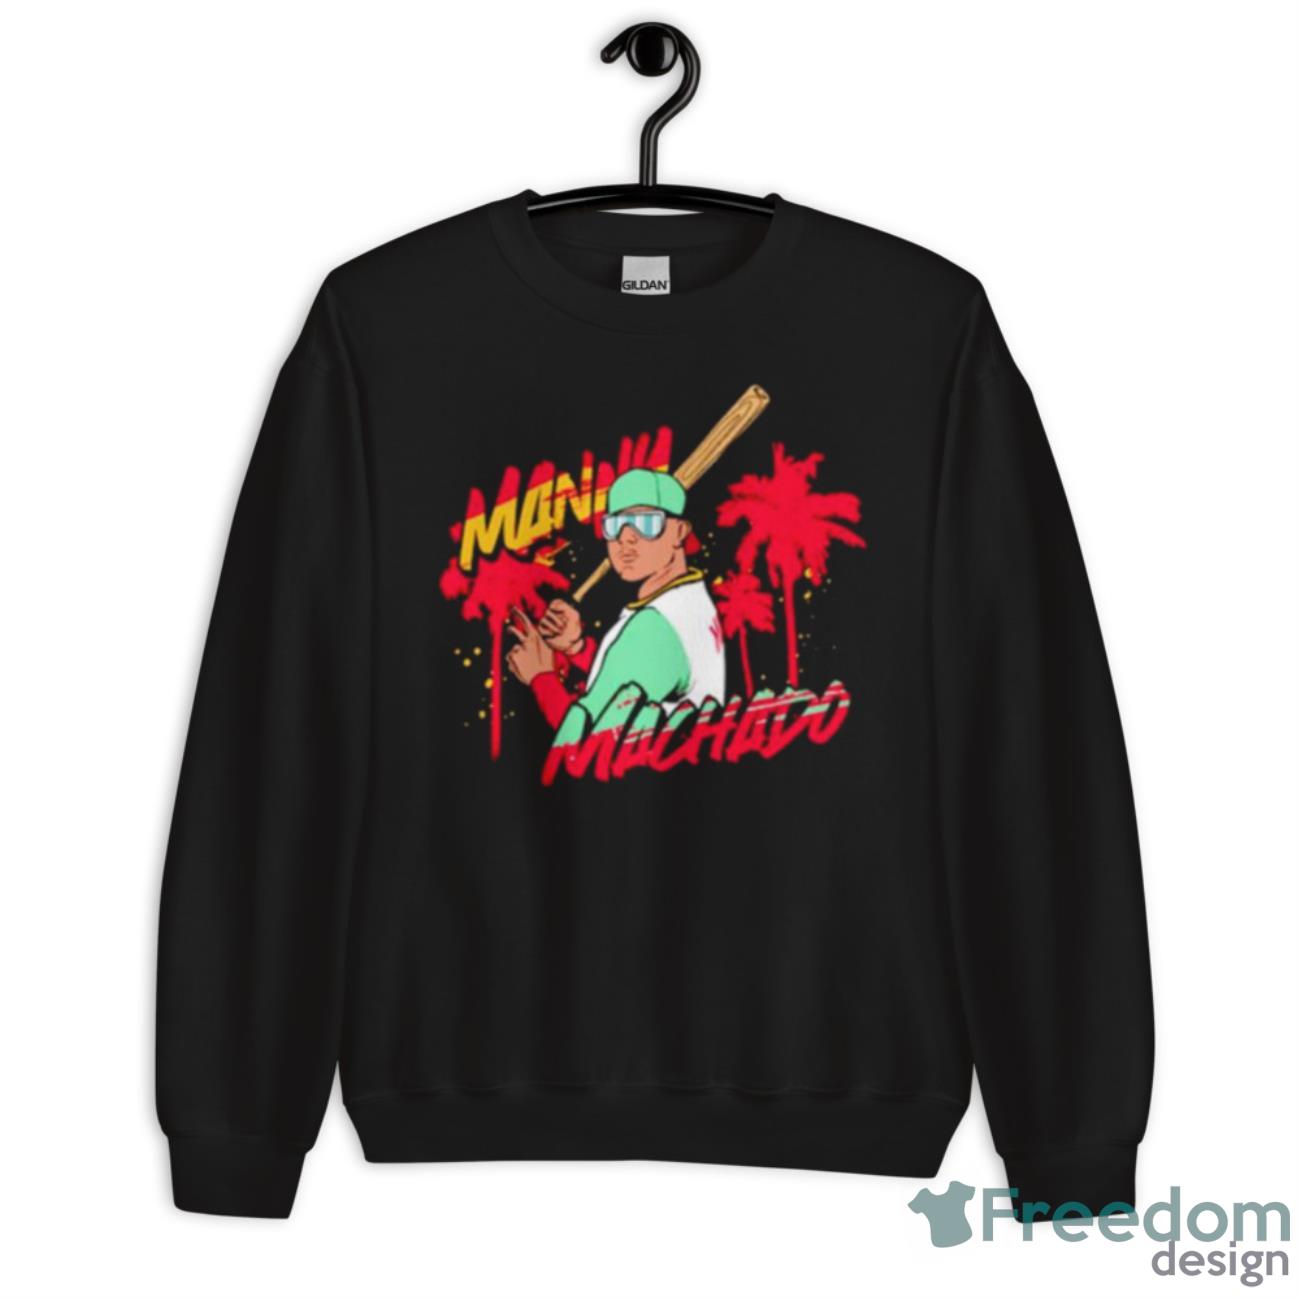 Manny Machado San Diego Tropical Shirt - Freedomdesign